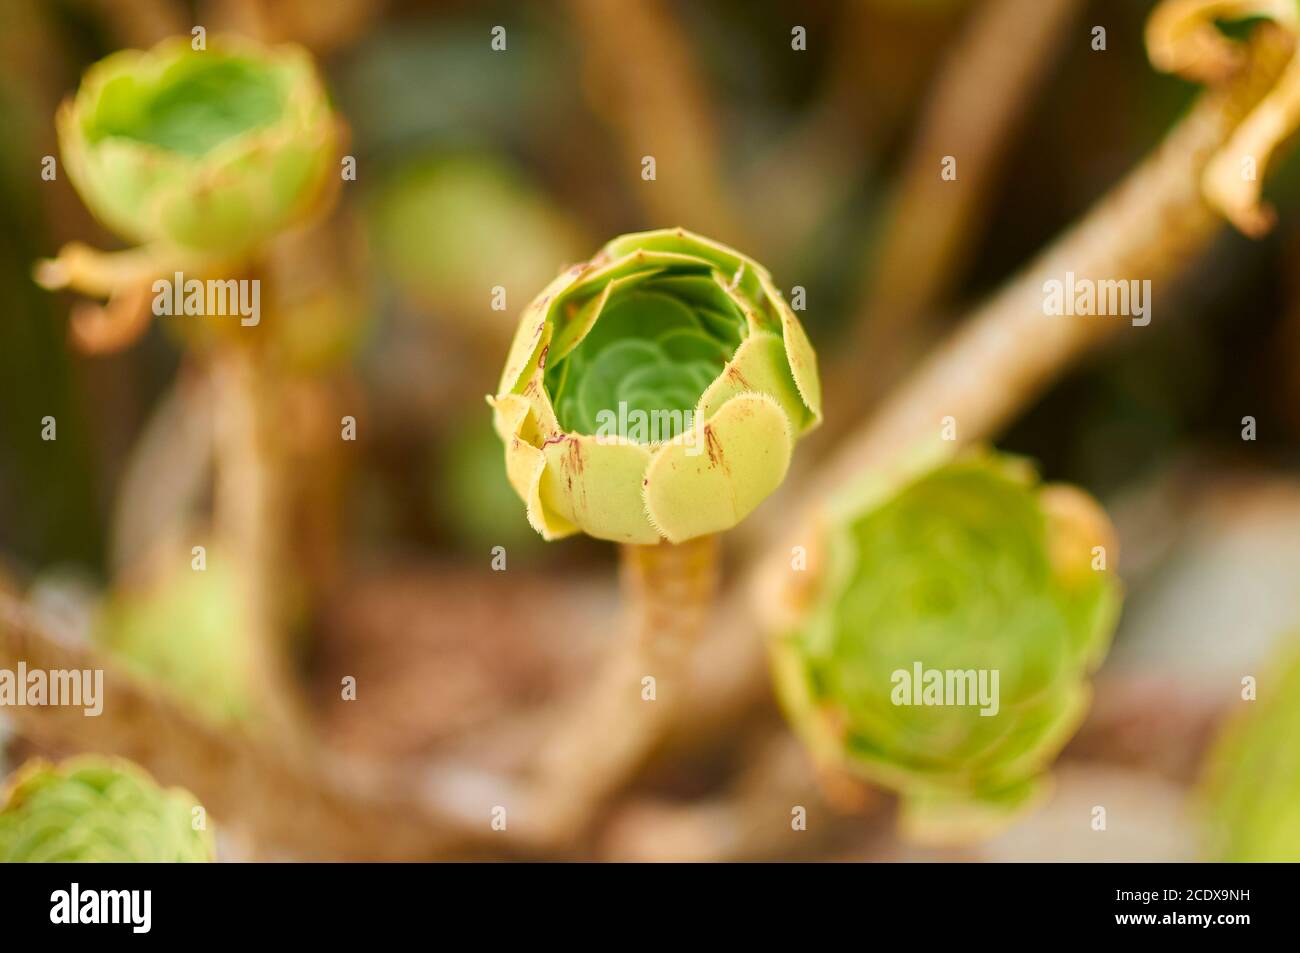 Nahaufnahme Detail einer jungen geschlossenen Rosette von Baum houseleek (Aeonium arboreum, Crassulaceae). Irische Rose. Sukkulente Pflanze. Subtropischer Substrauch. Stockfoto